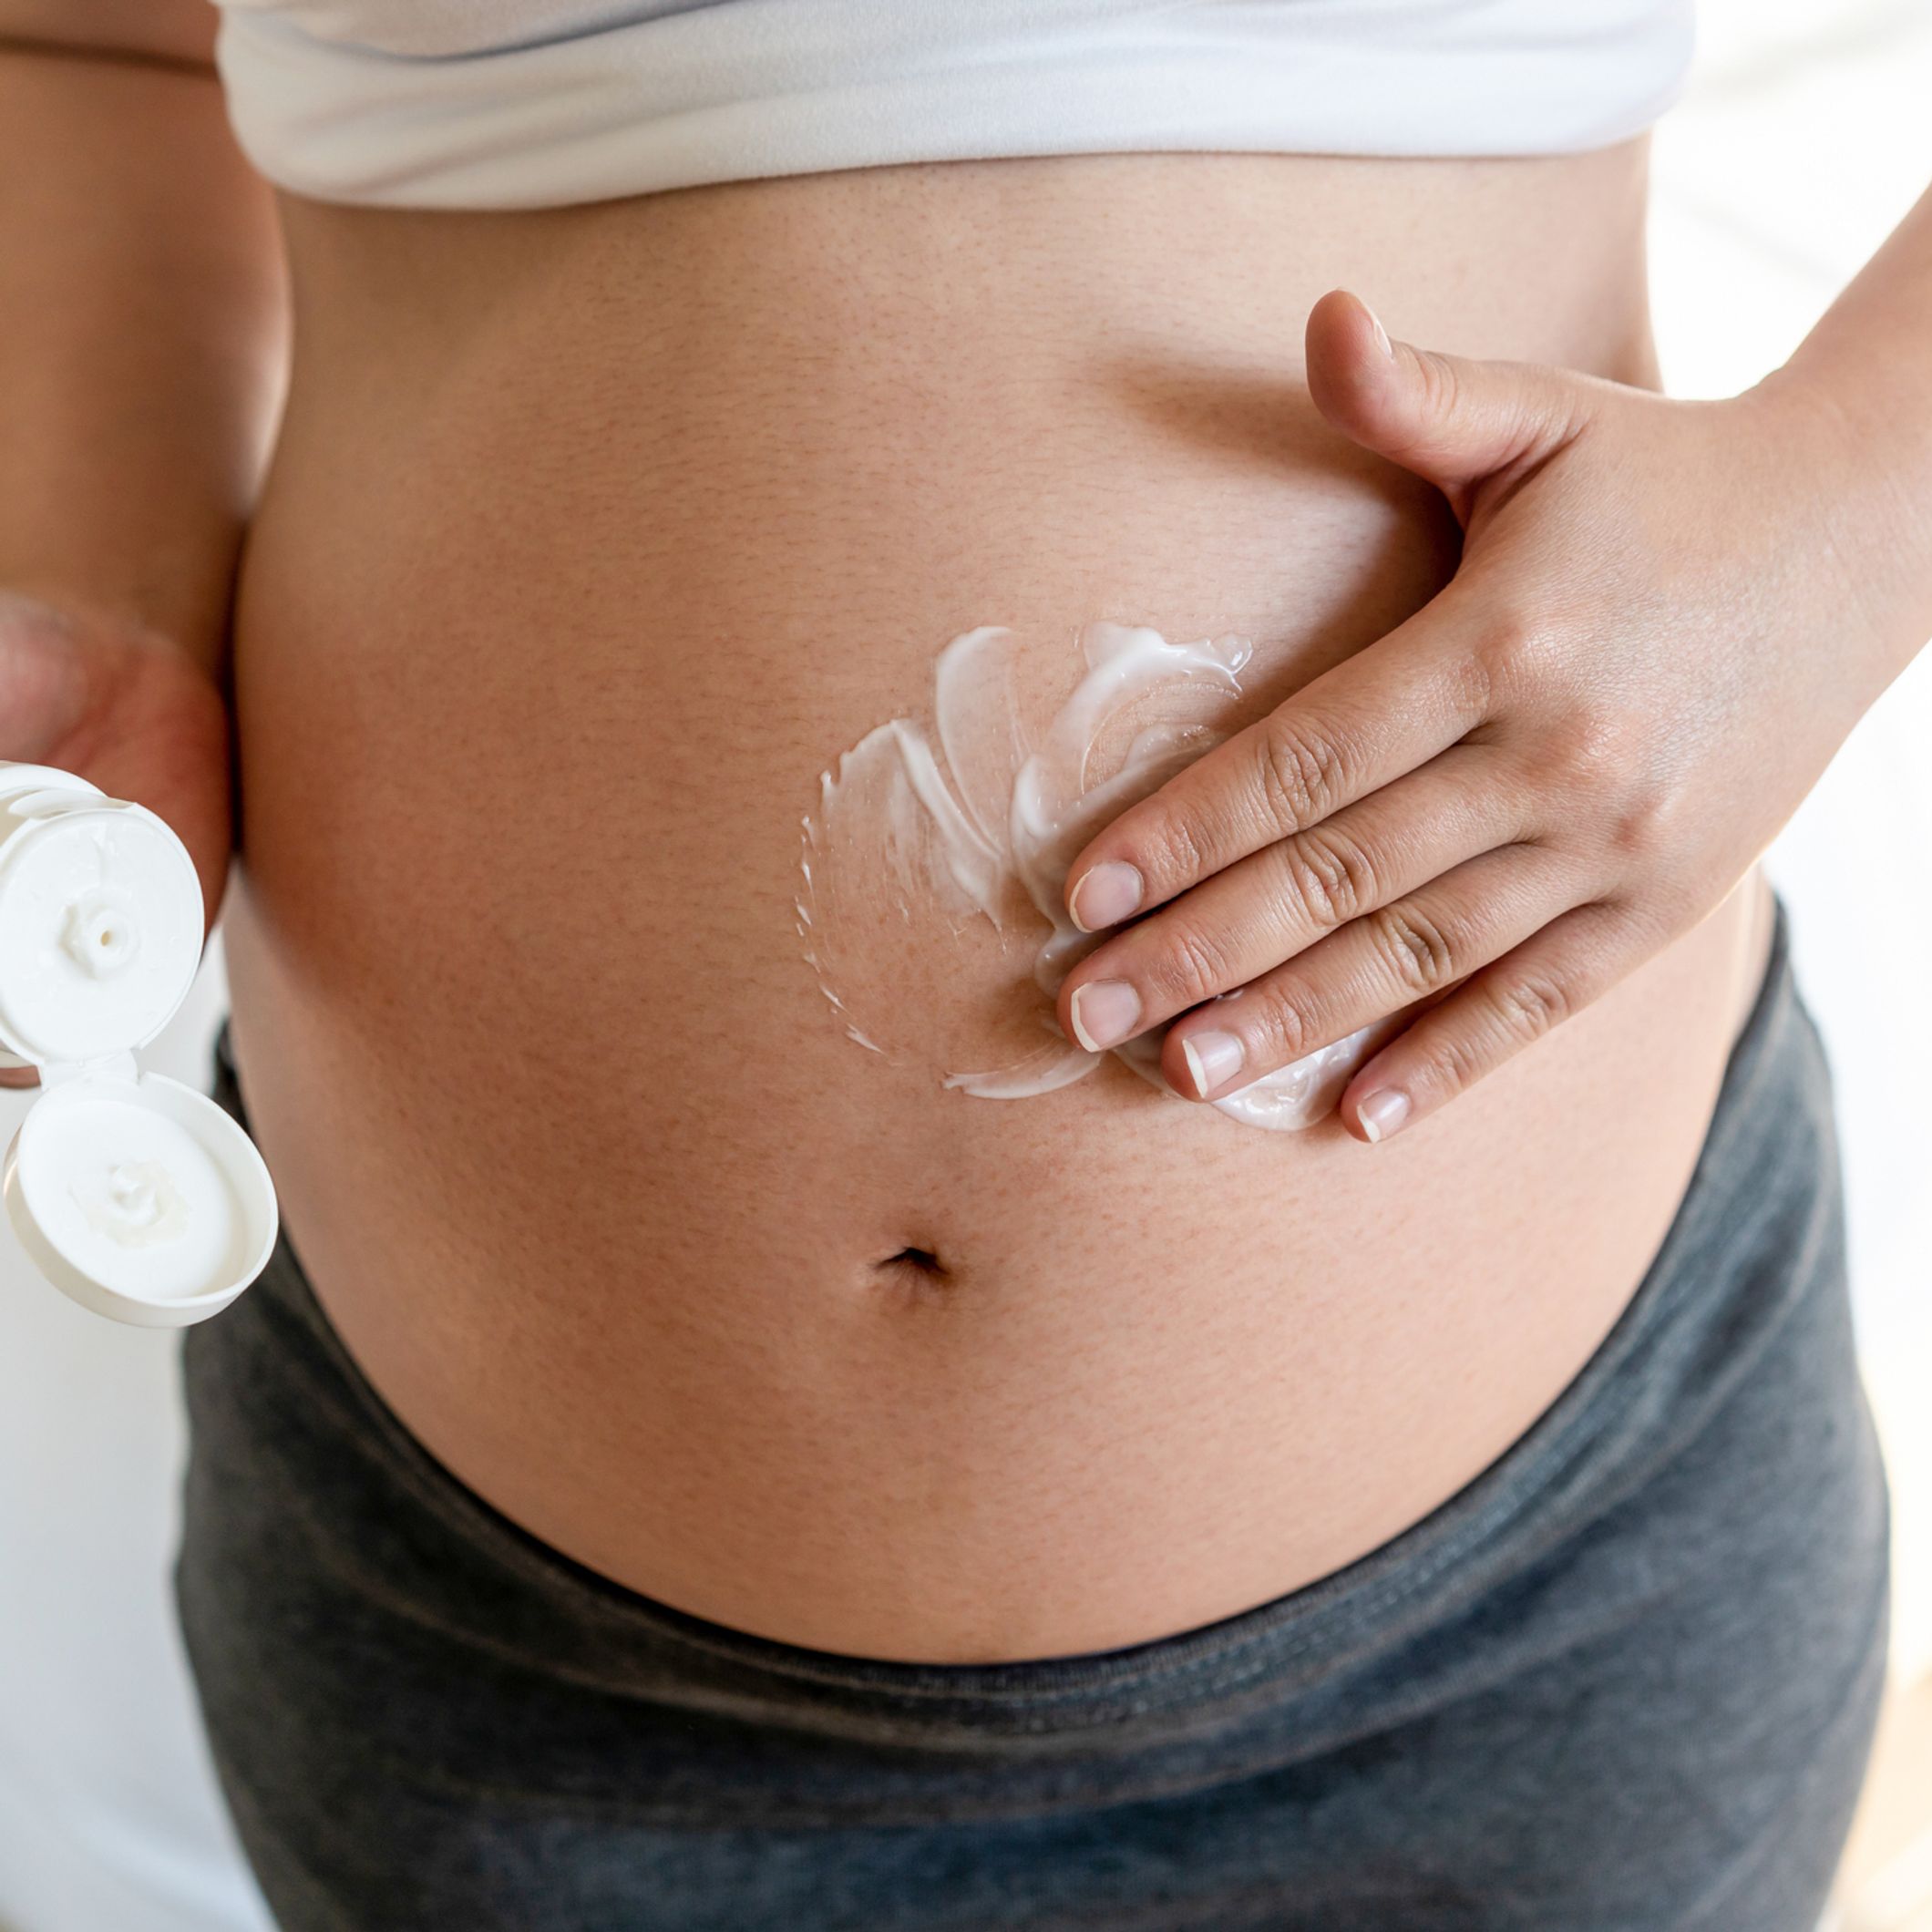 vergetures de grossesse : 7 crèmes et soins pour les prévenir